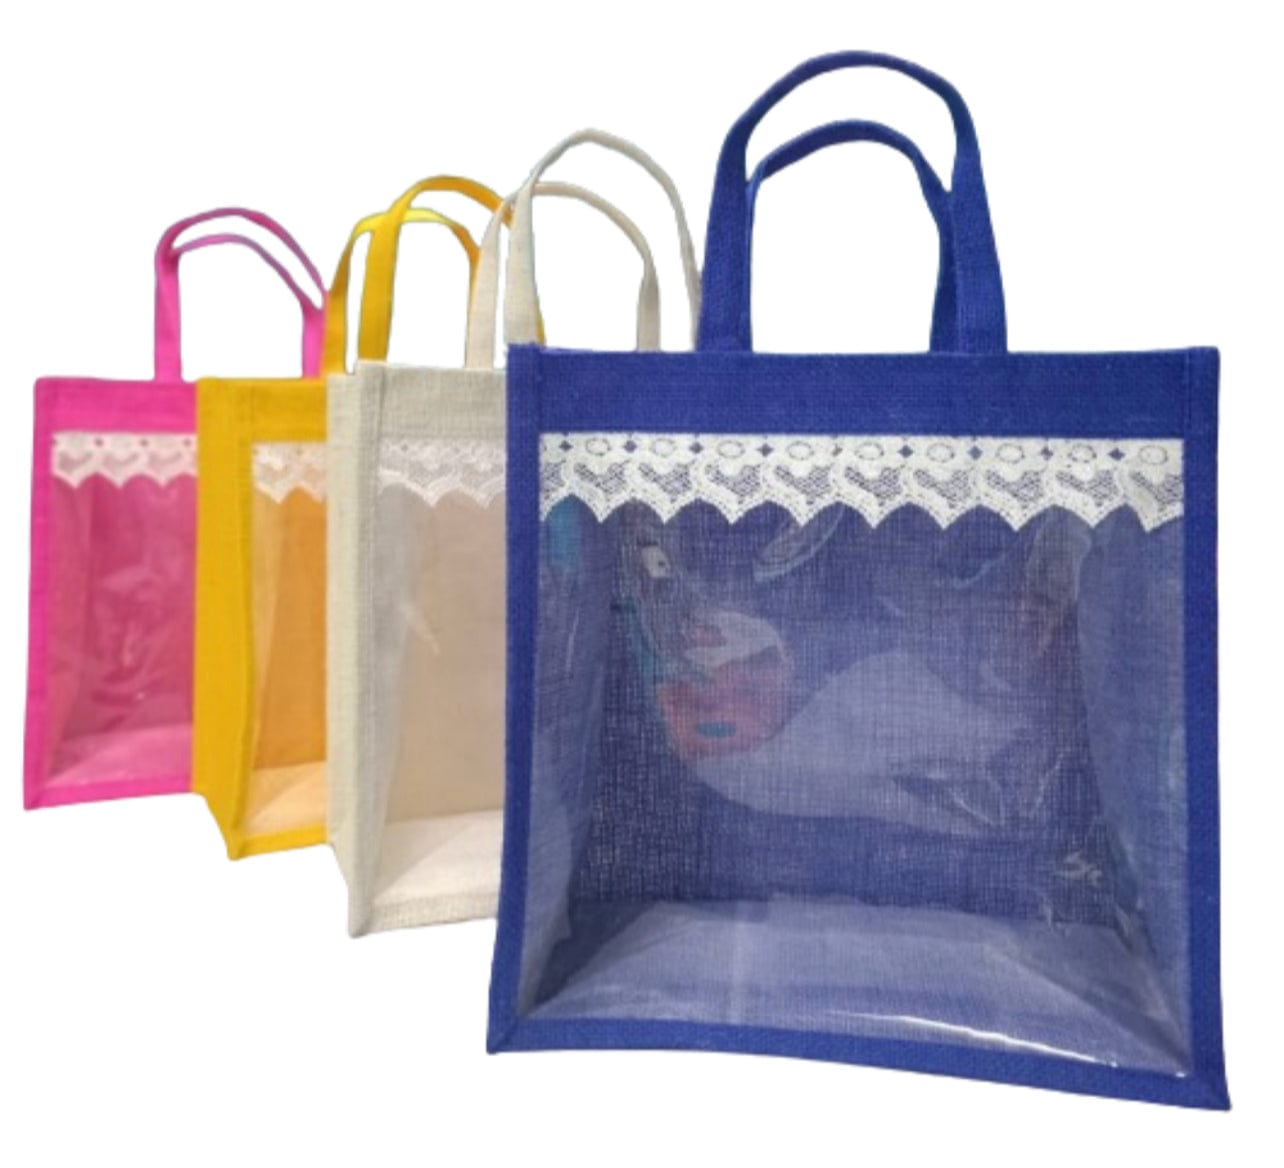 Fancy Thamboolam Potli Bag at Rs 35/bag | Potli Bag Manufacturers in Delhi  | ID: 12897499255